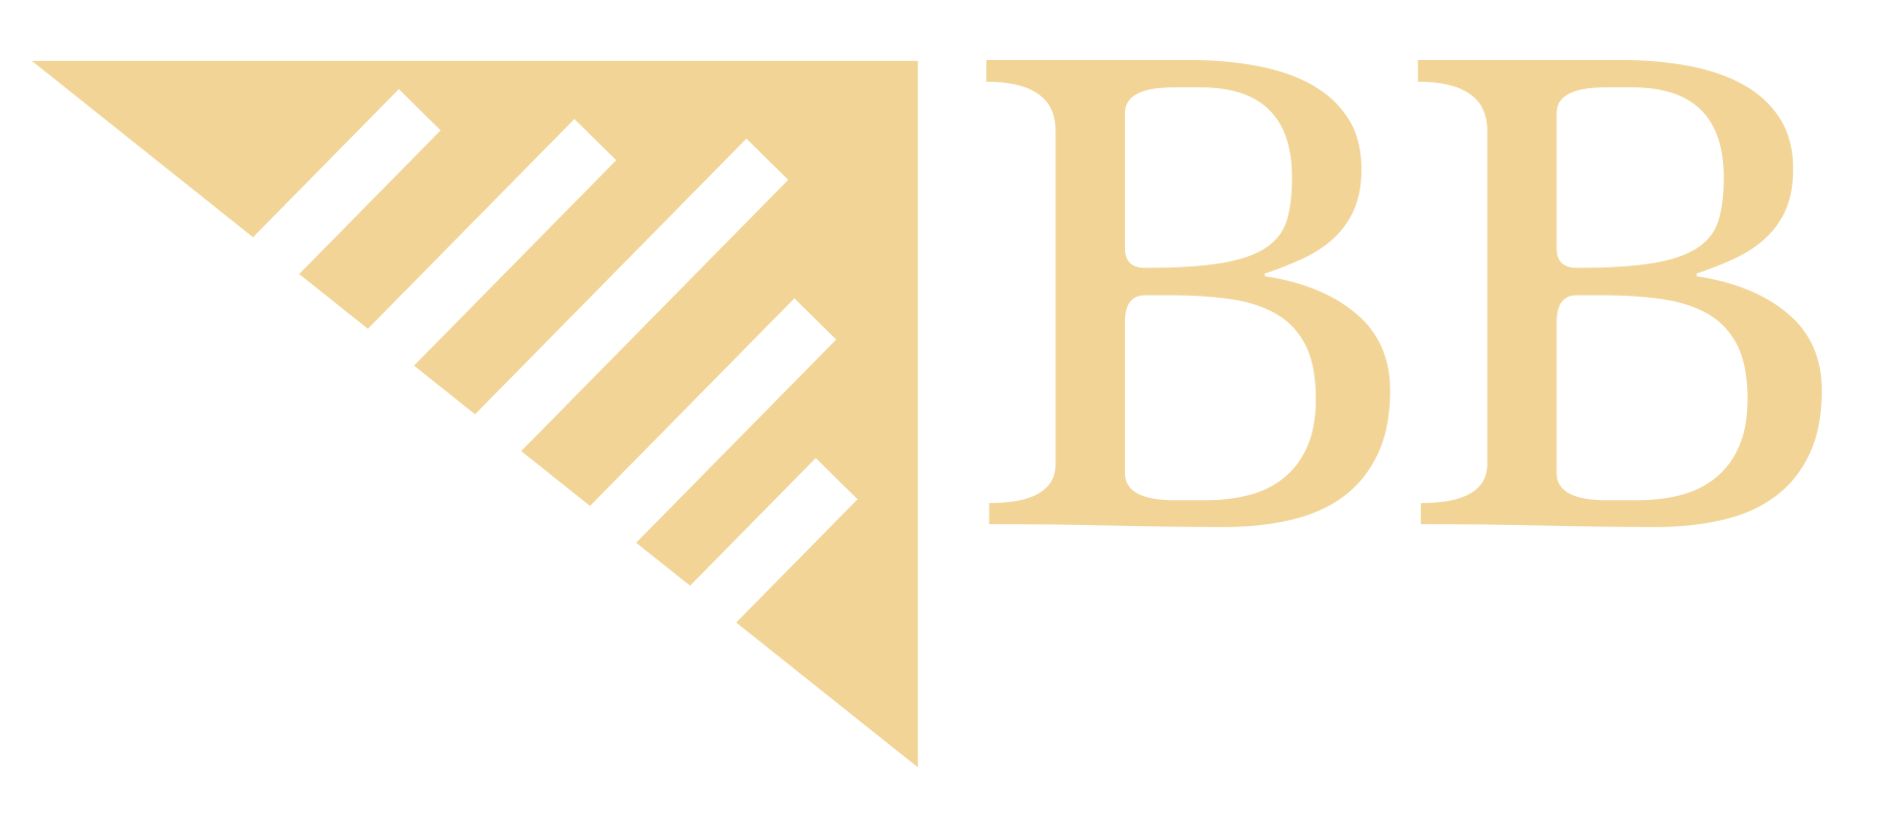 Broadband Innovation